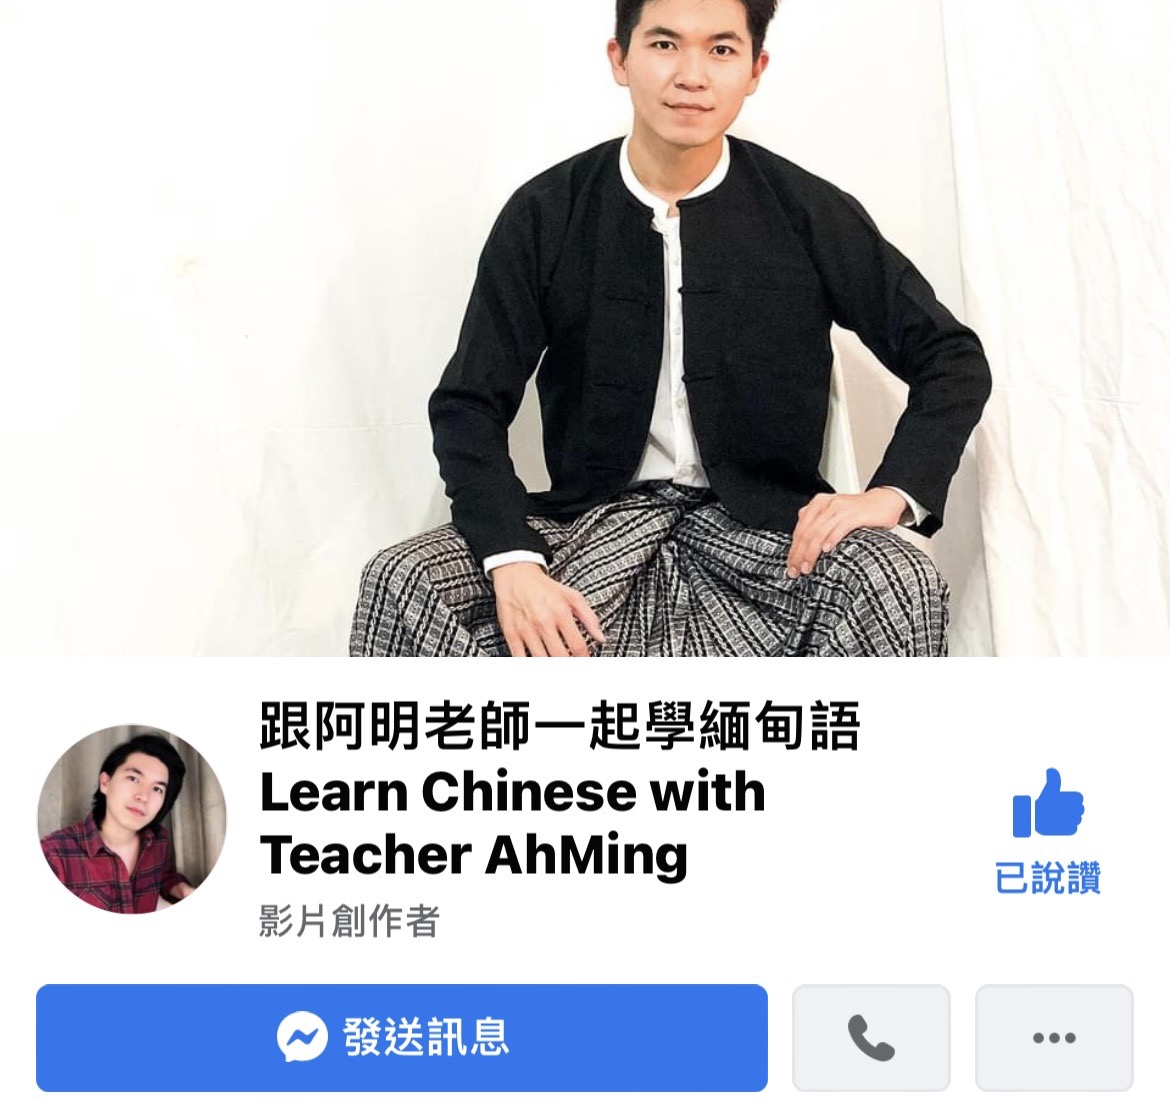 ยินดีต้อนรับสู่การเรียนรู้ภาษาพม่ากับ Chen Qiming ภาพ/นำมาจาก Facebook